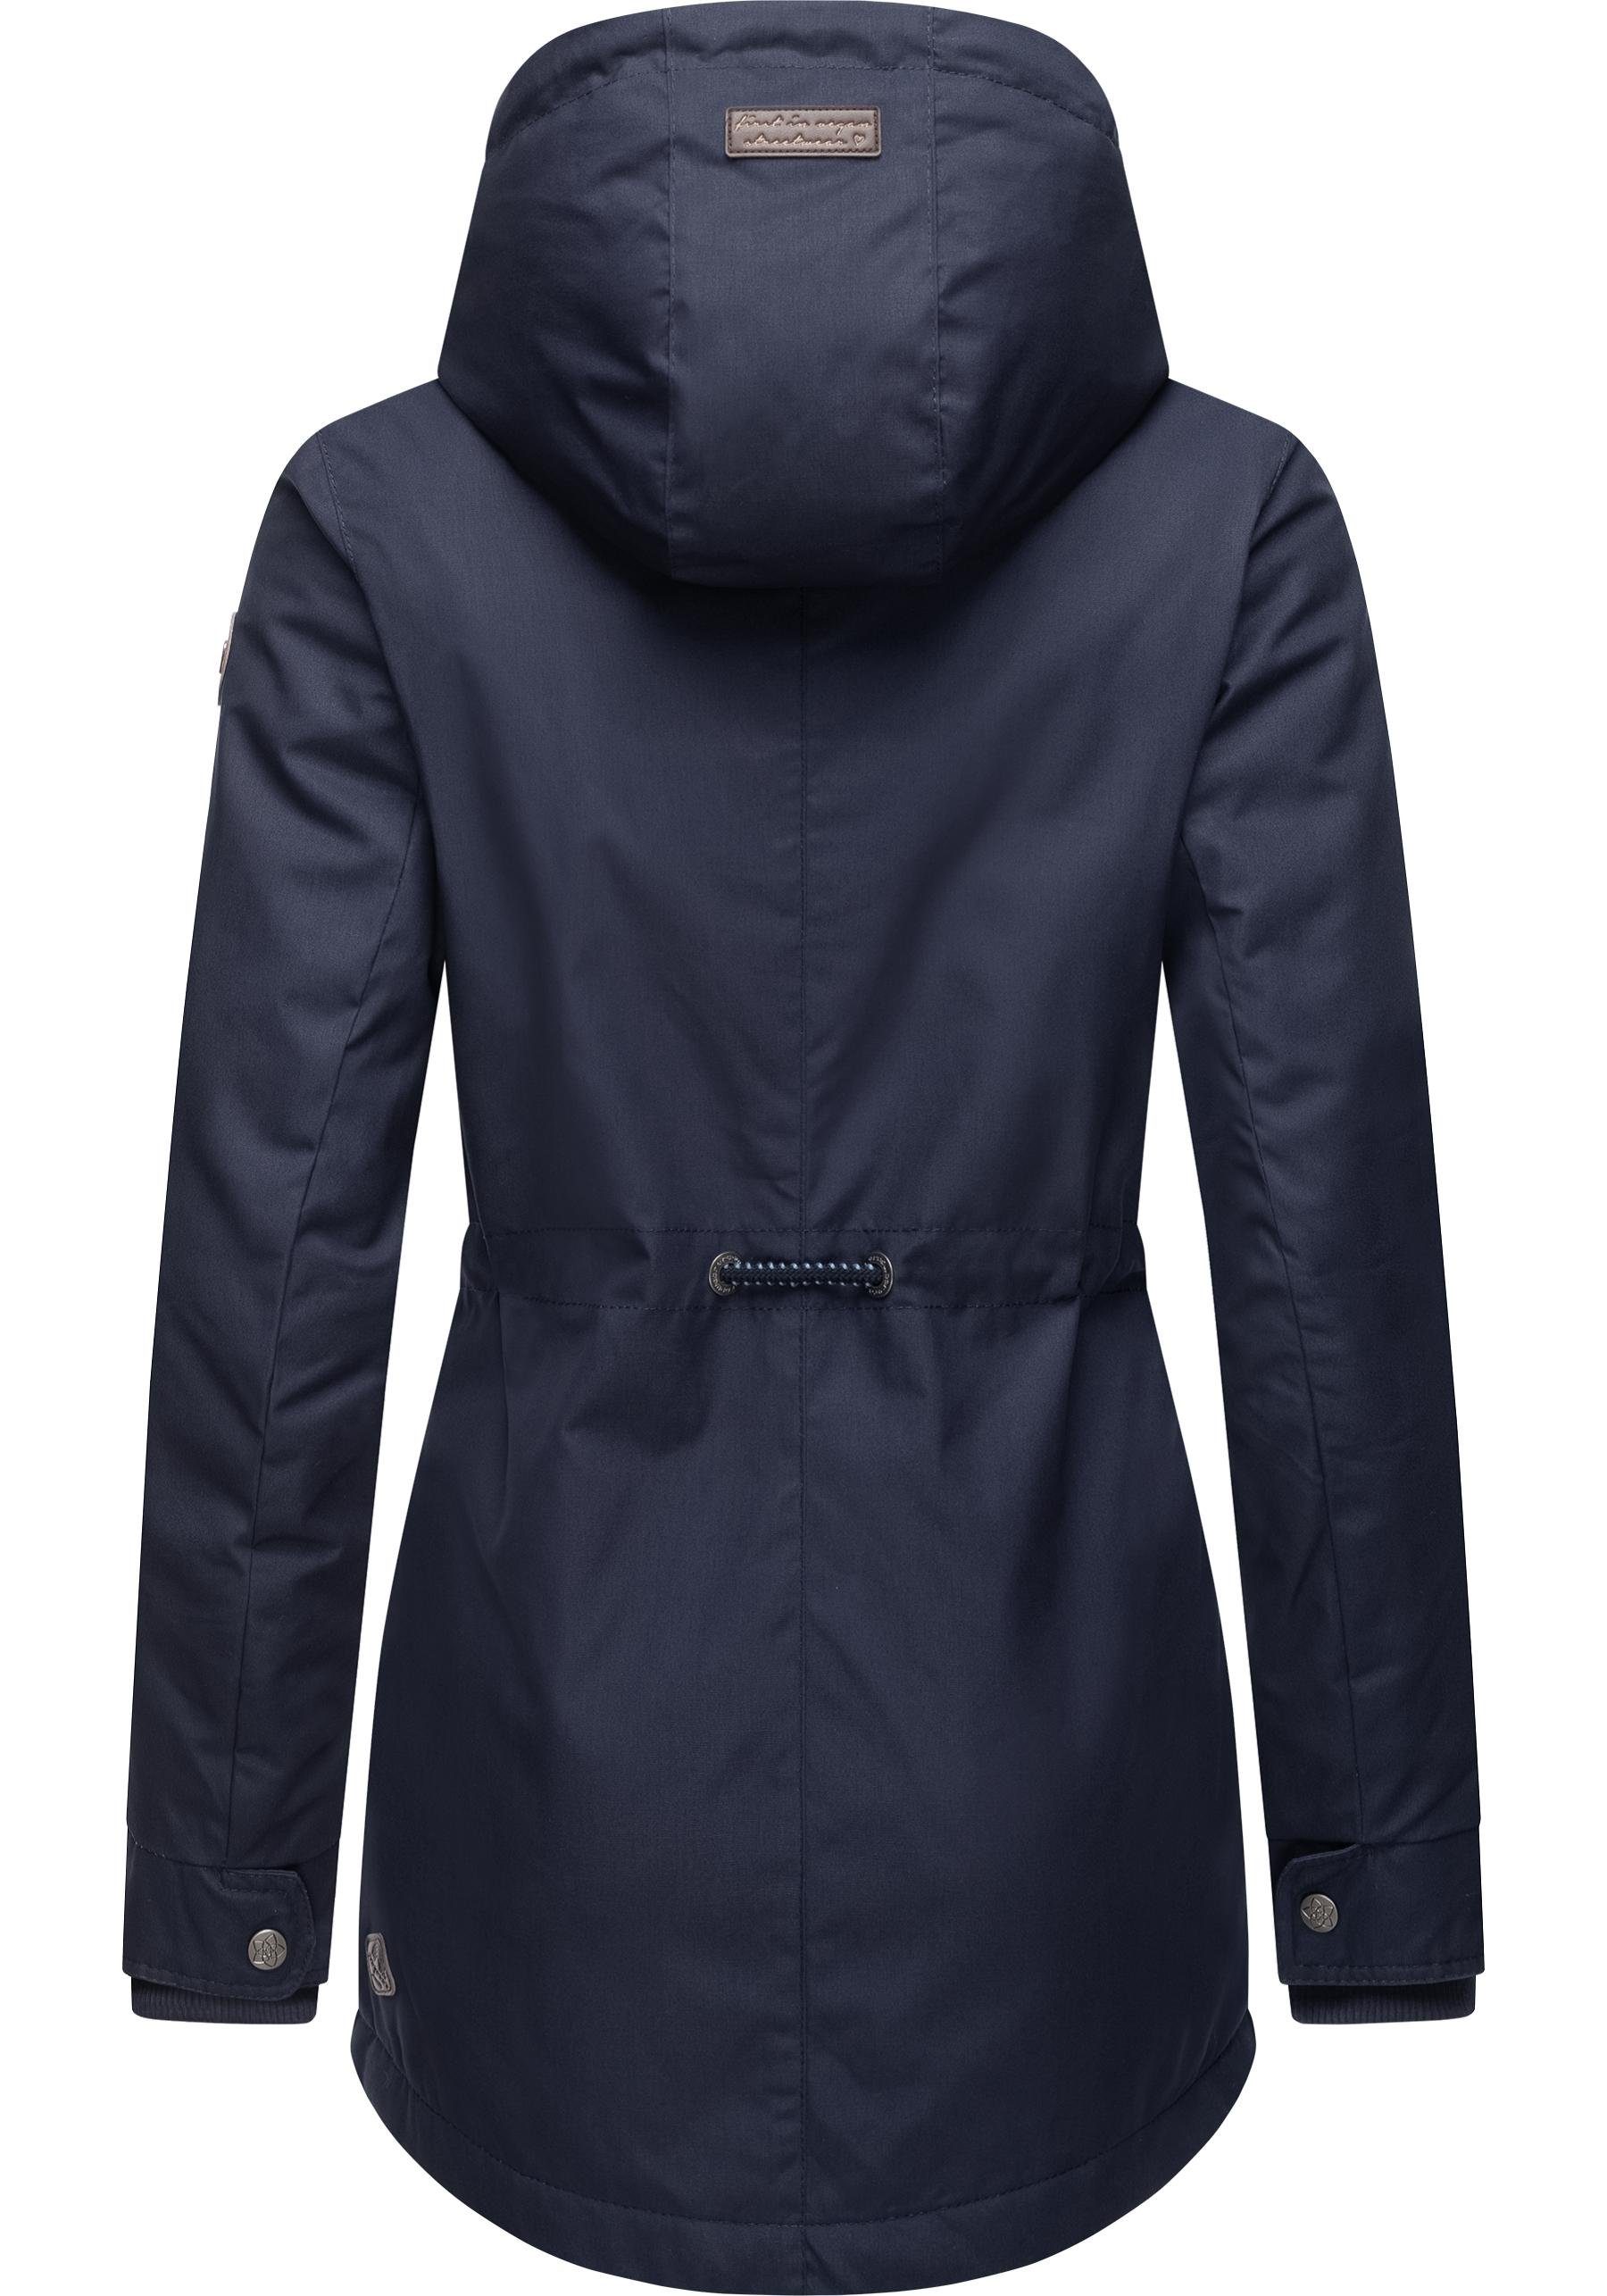 graublau die Winterjacke für Label Winterparka Jahreszeit Ragwear Black stylischer kalte Monadis